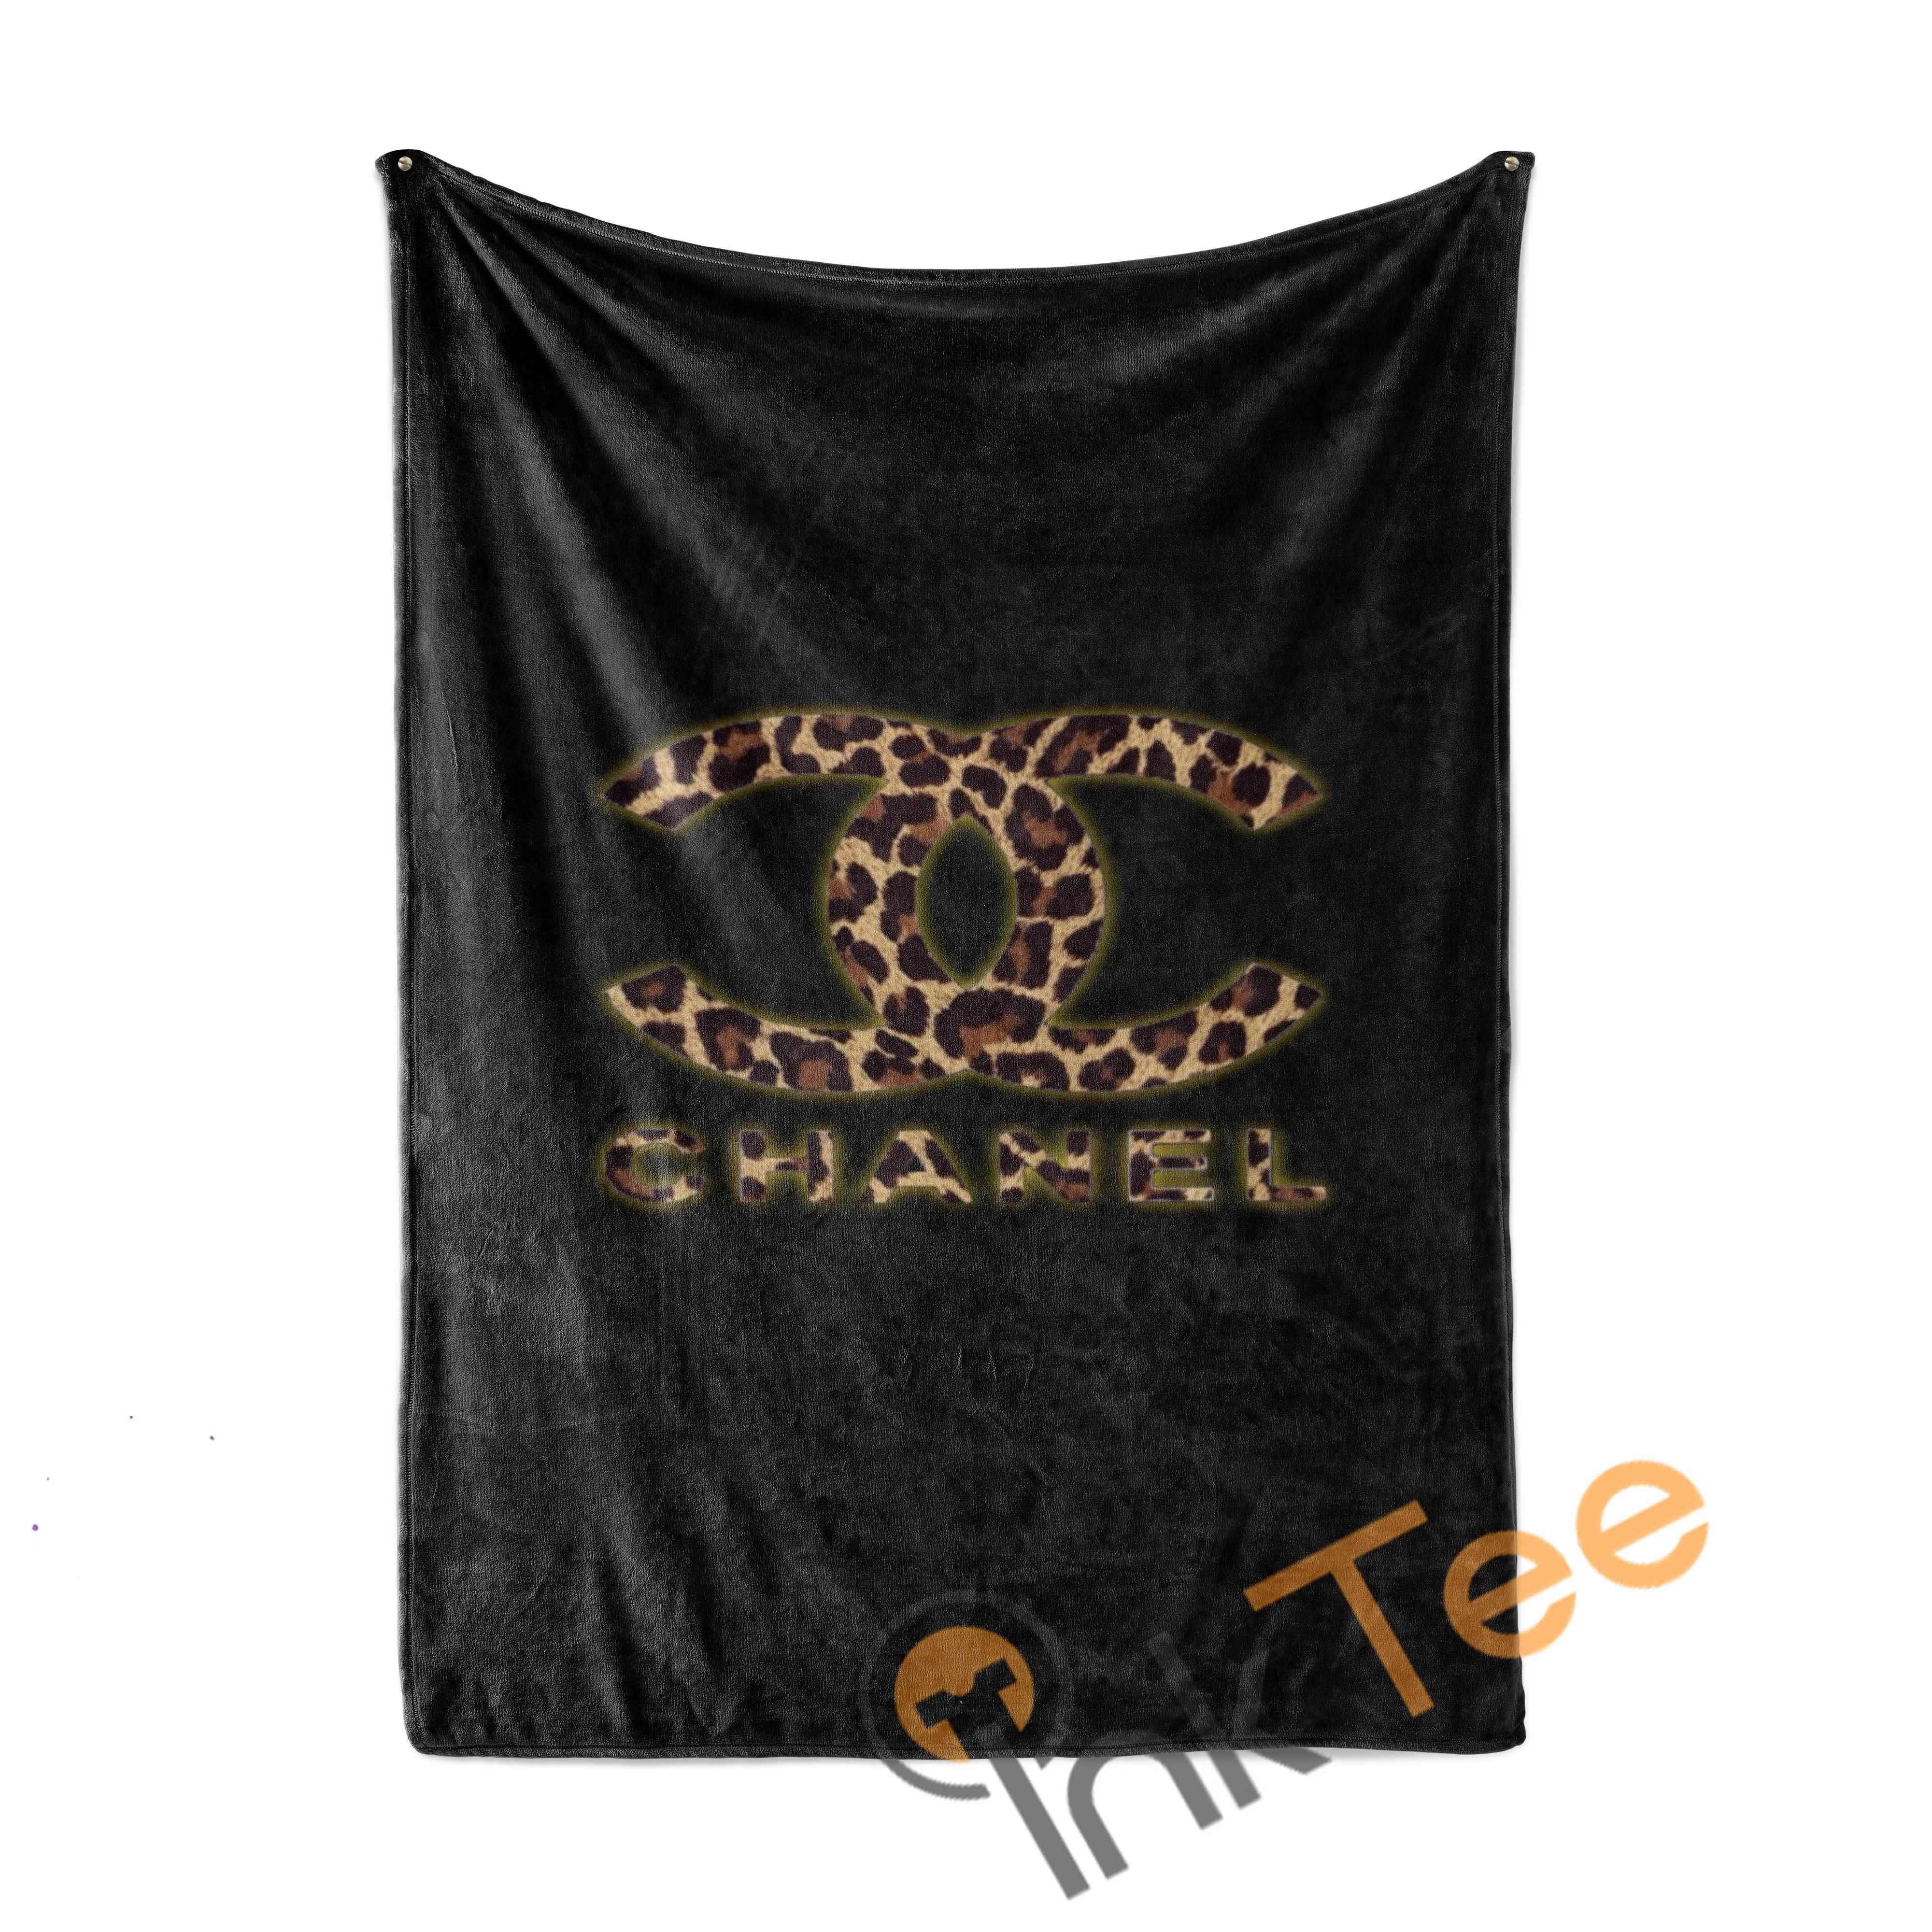 Leopard Chanel Limited Edition Amazon Best Seller Sku 4063 Fleece Blanket